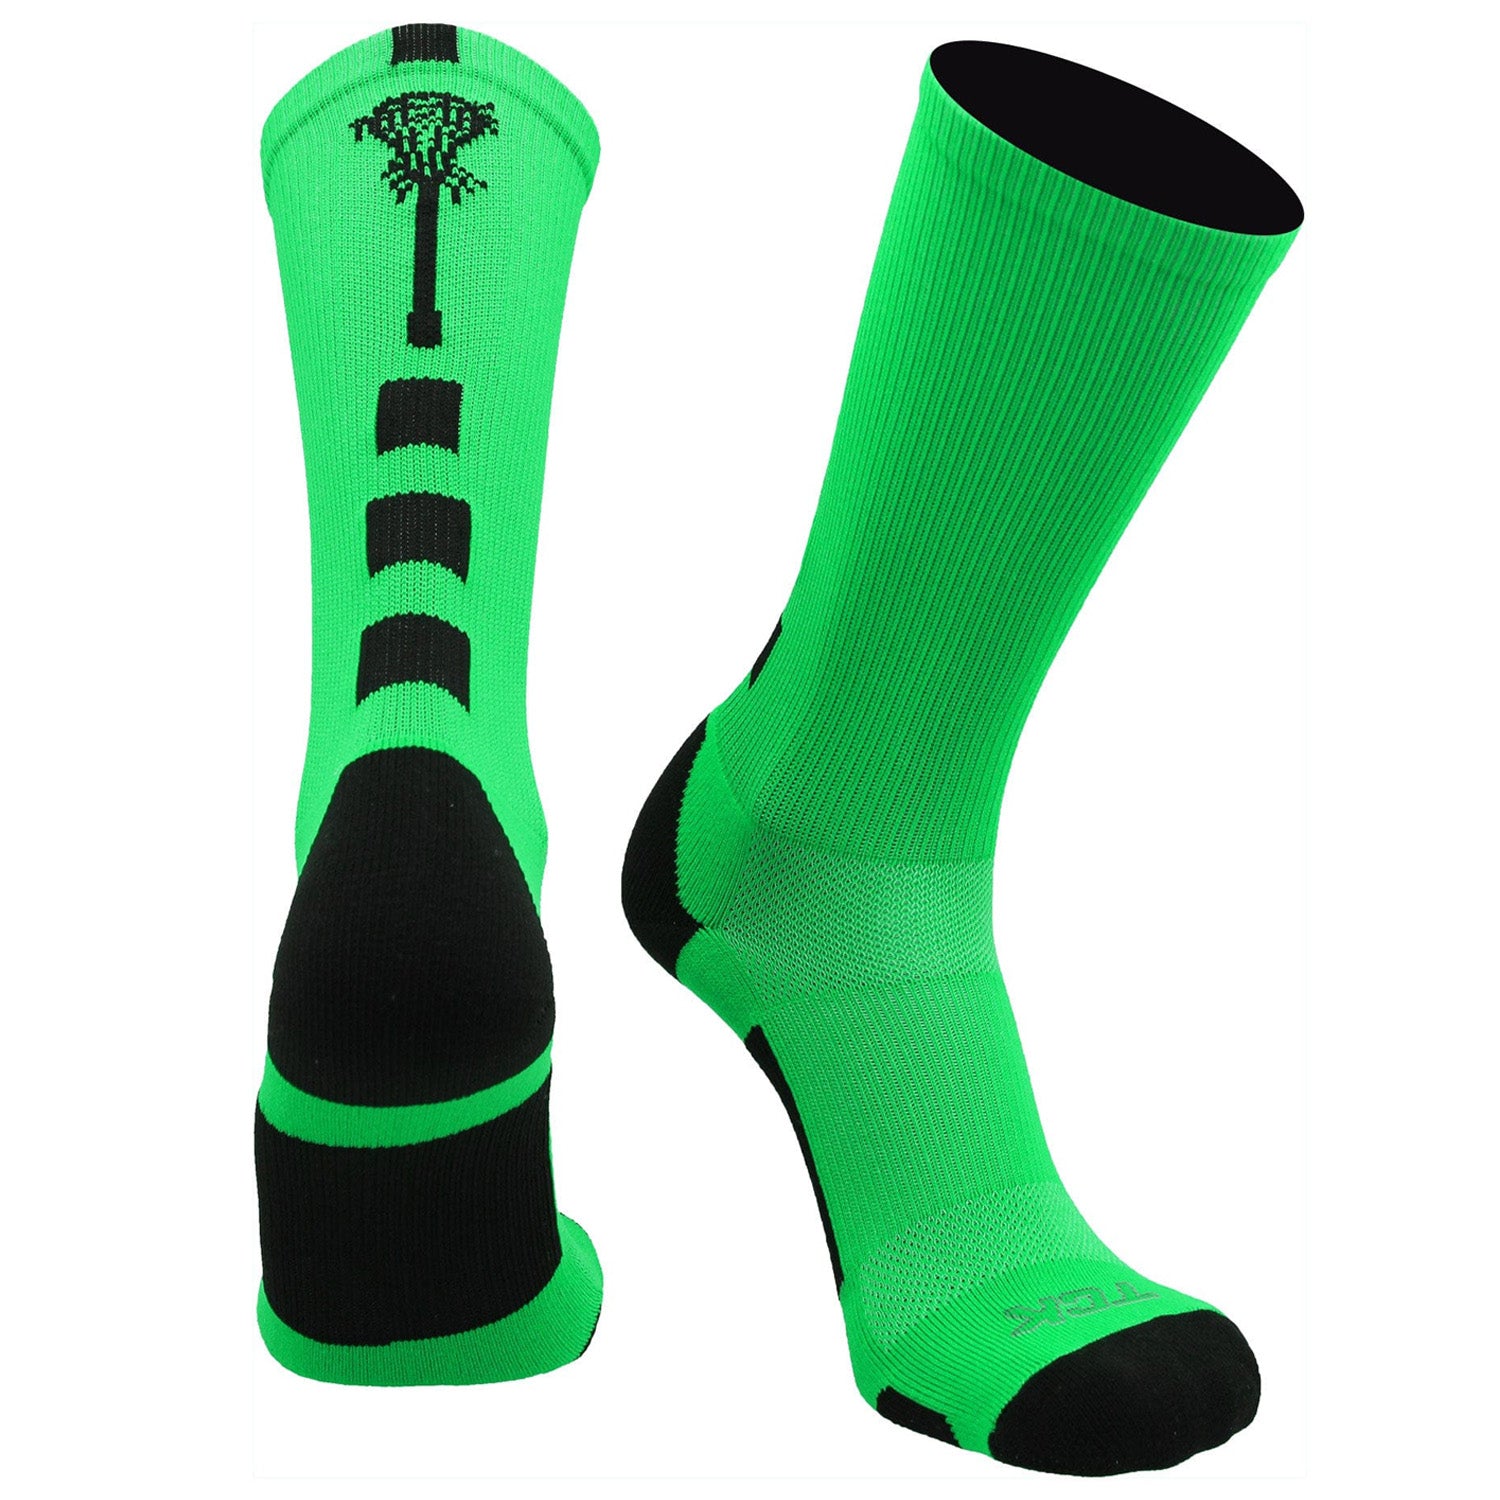 green lacrosse socks with logo